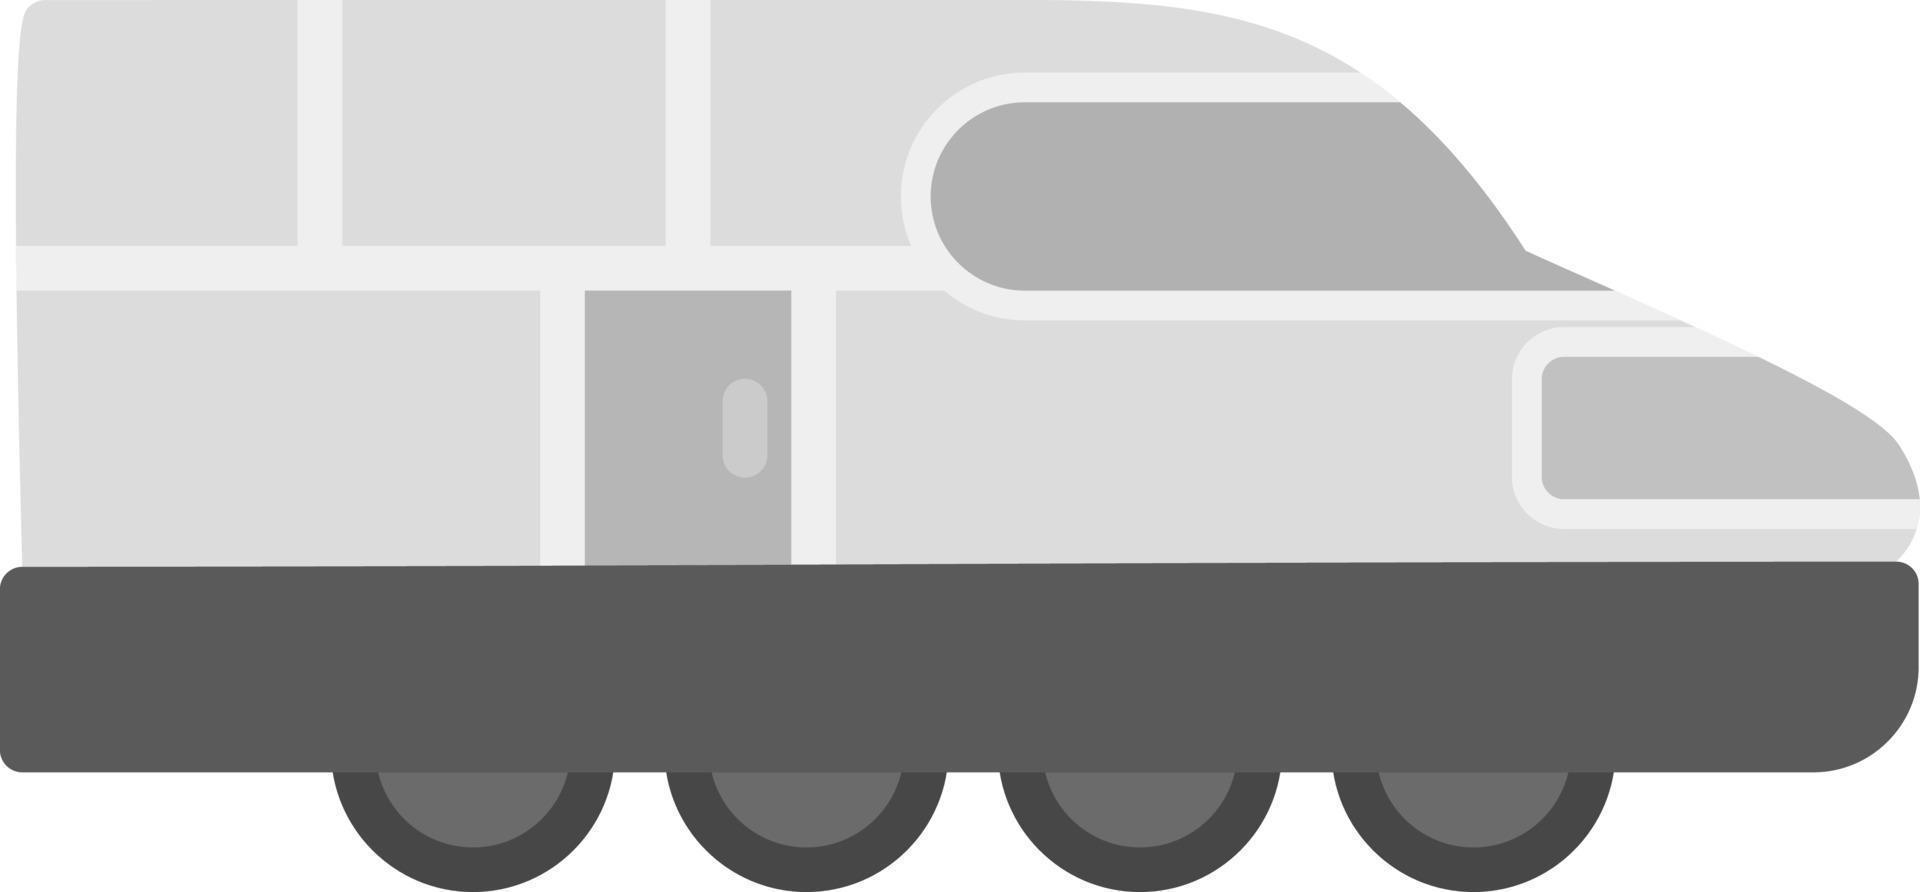 Train Creative Icon Design vector